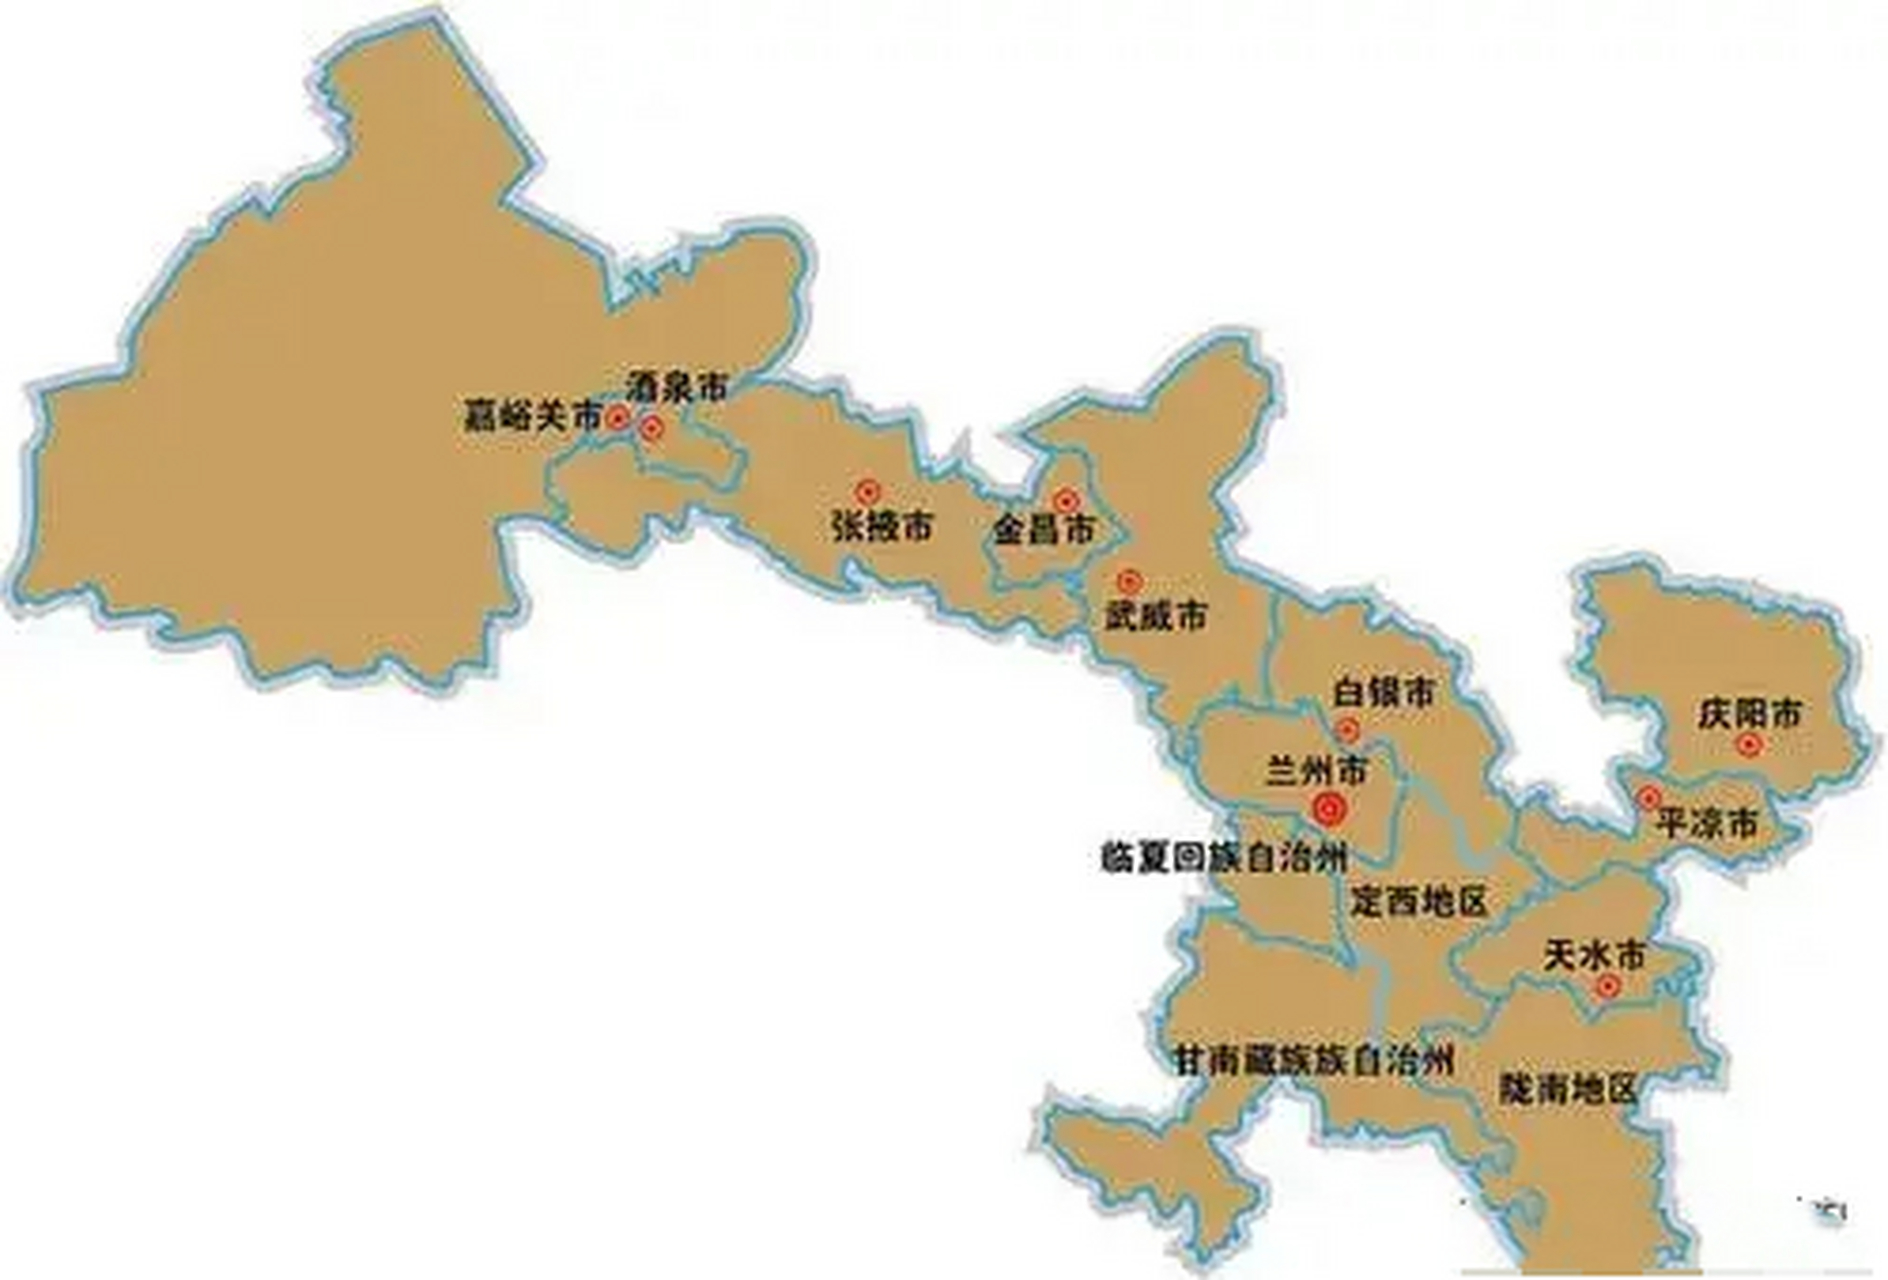 甘肃行政区划调整畅想 甘肃地理位置狭长,显得很多余,按很多人的理解